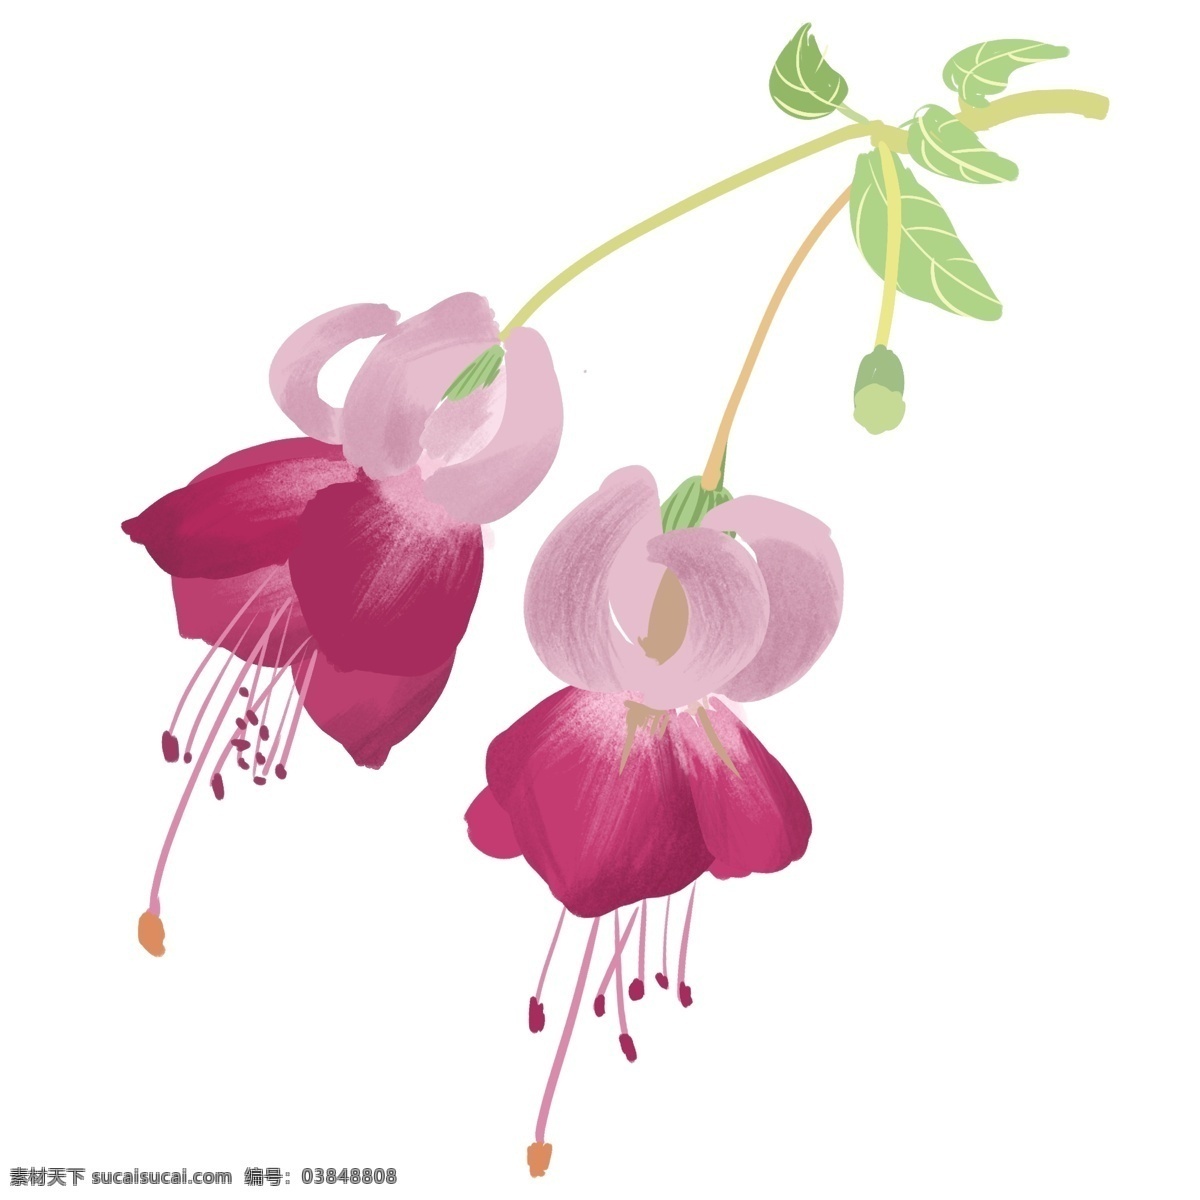 中国画 小清 新手 绘 花卉 装饰 手绘 装饰素材 写意 小清新 国画 绿植 植物 花朵 粉色的花 春天